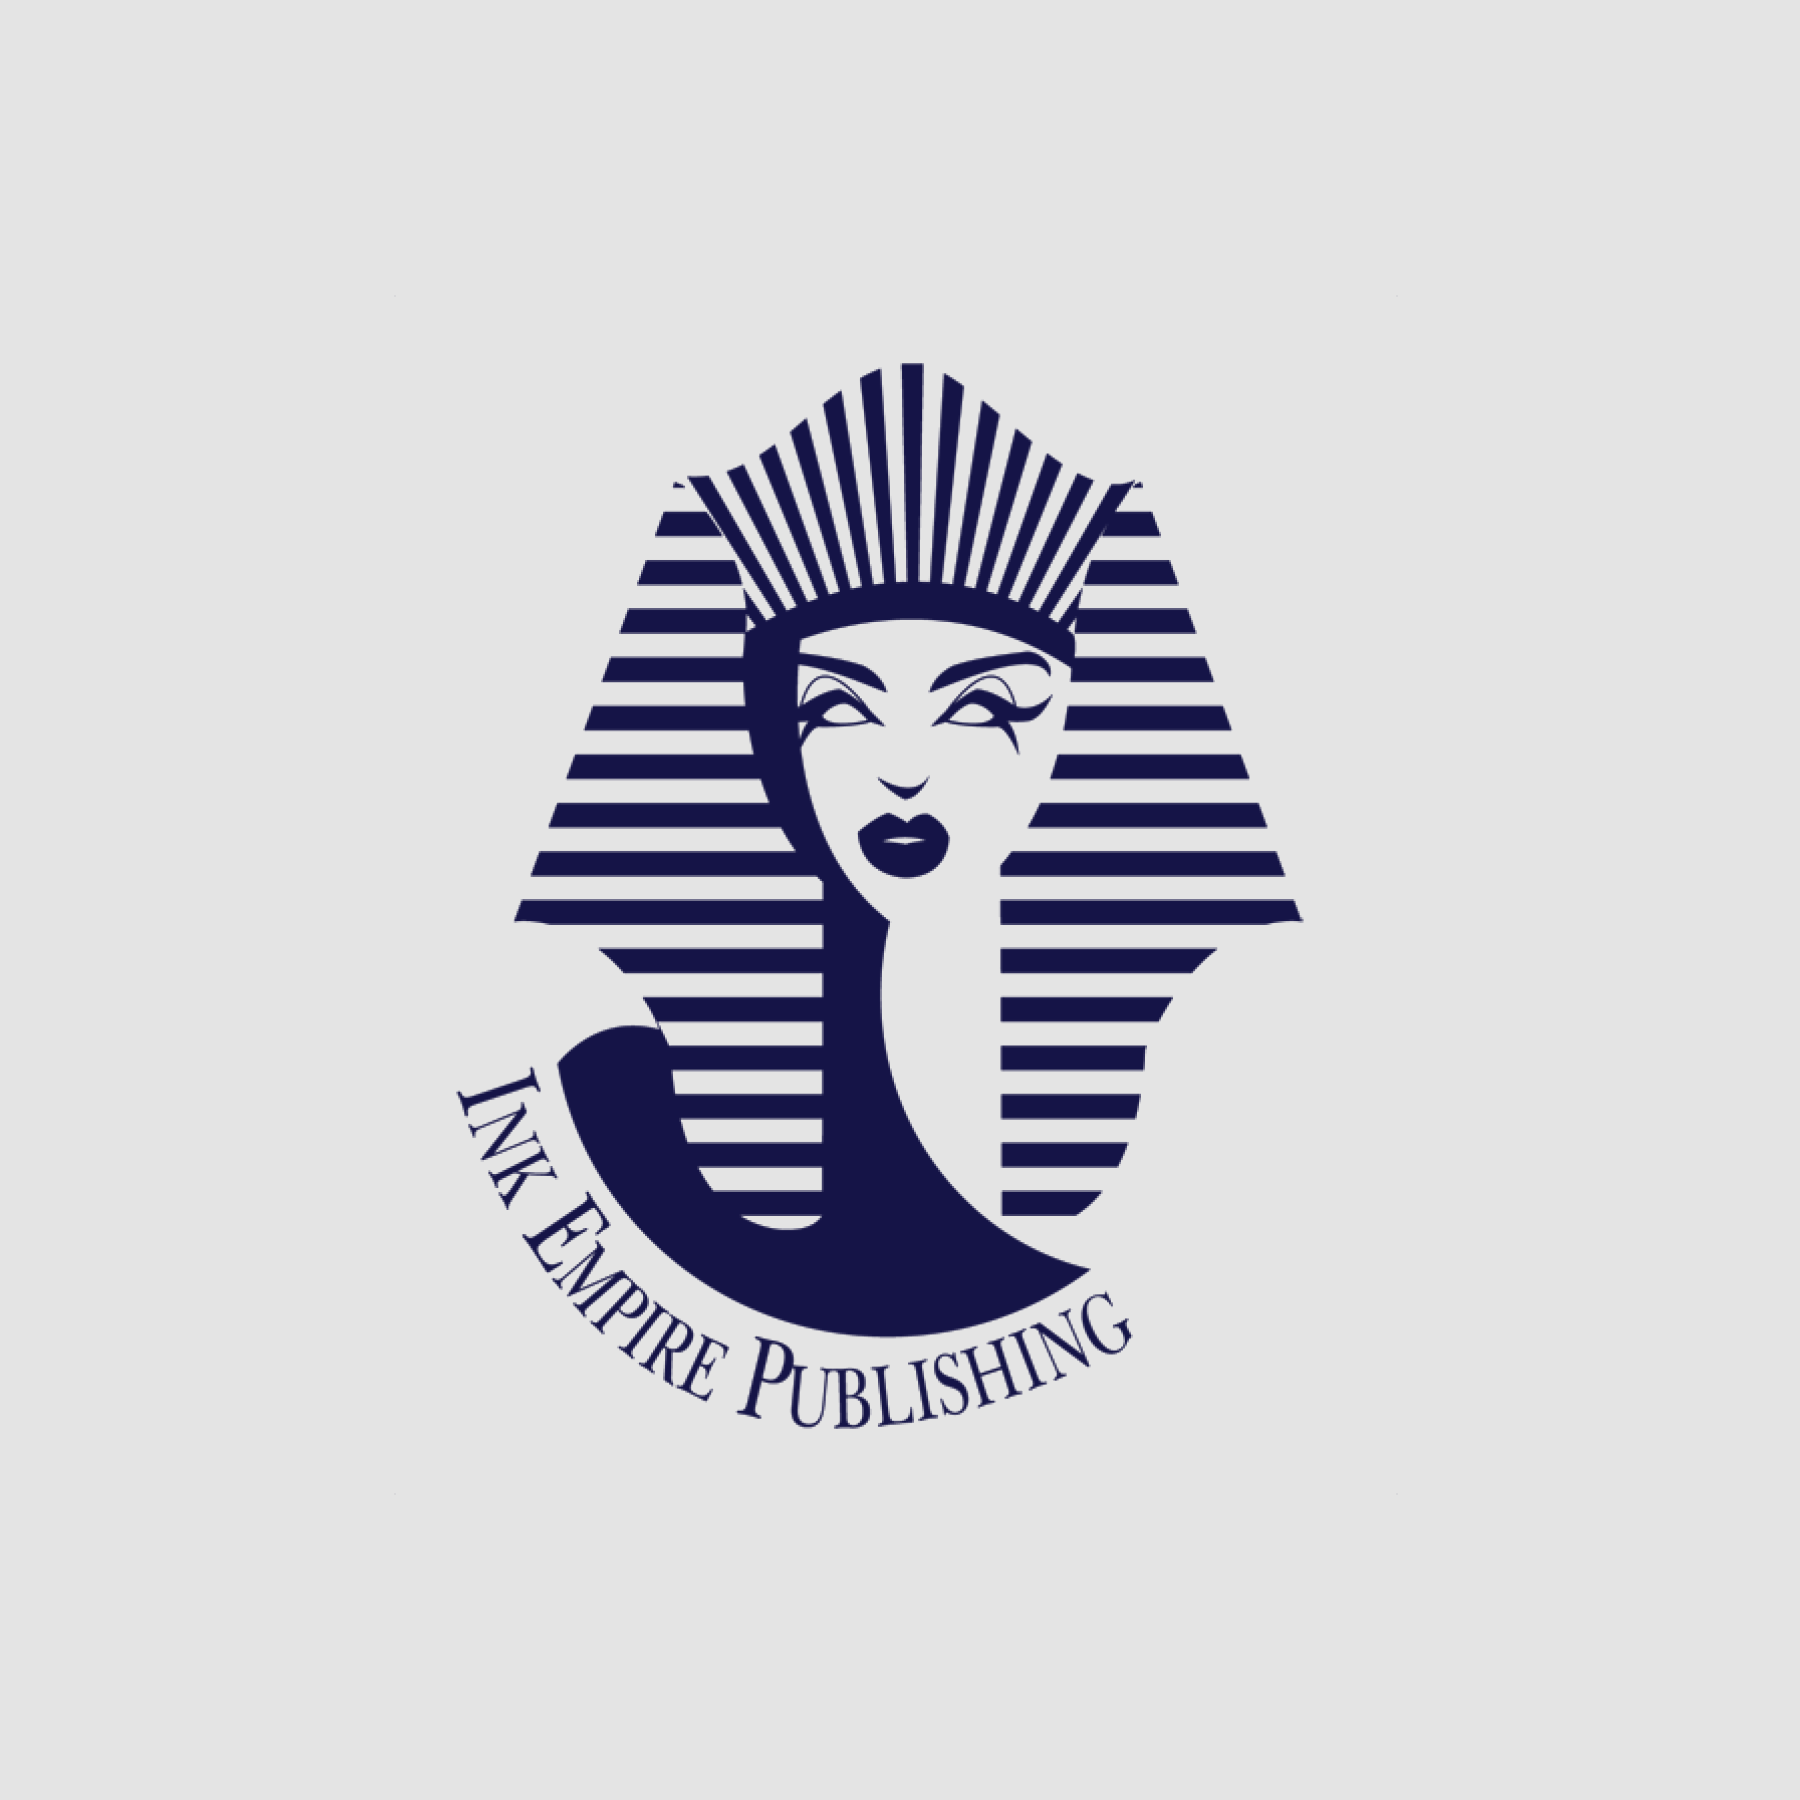 Ink Empire Publishing logo